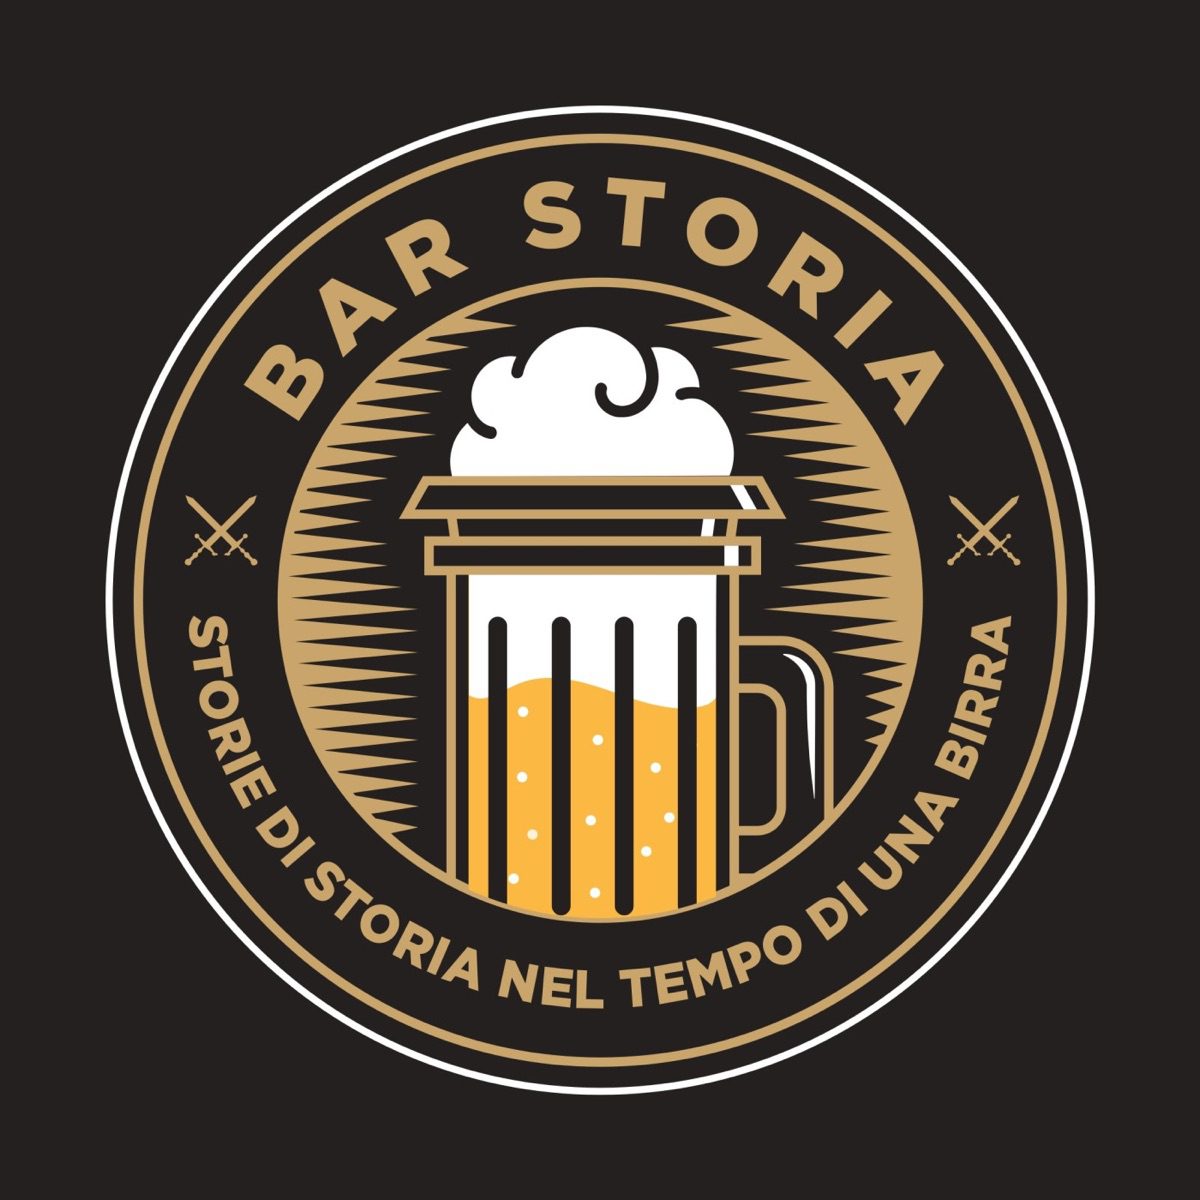 Bar storia, il logo del podcast